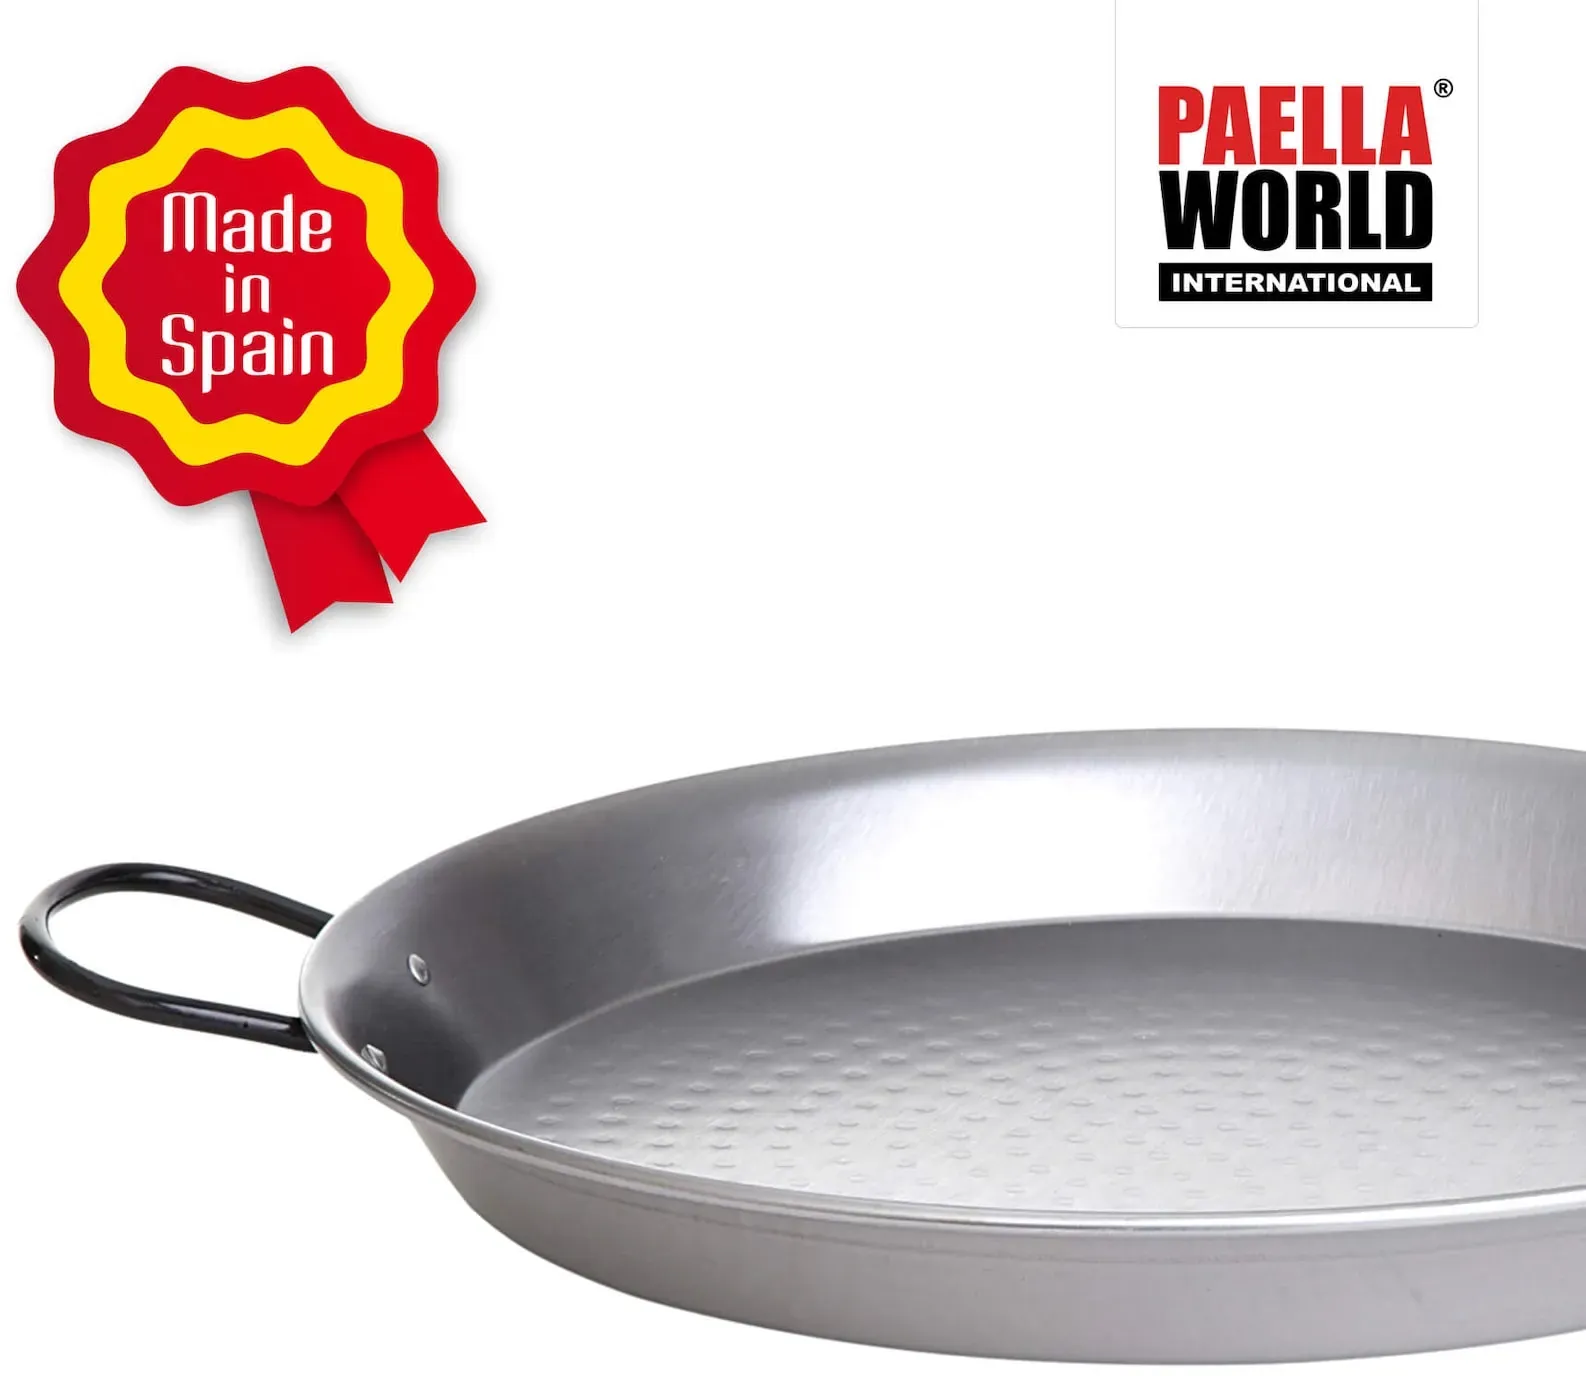 Original spanische Paelle Pfanne Typ 'Valencia' - leicht, Ø 80 cm, polierter Stahl, robust und preiswert: Ideal für Paella, Pfannen-/Reisgerichte